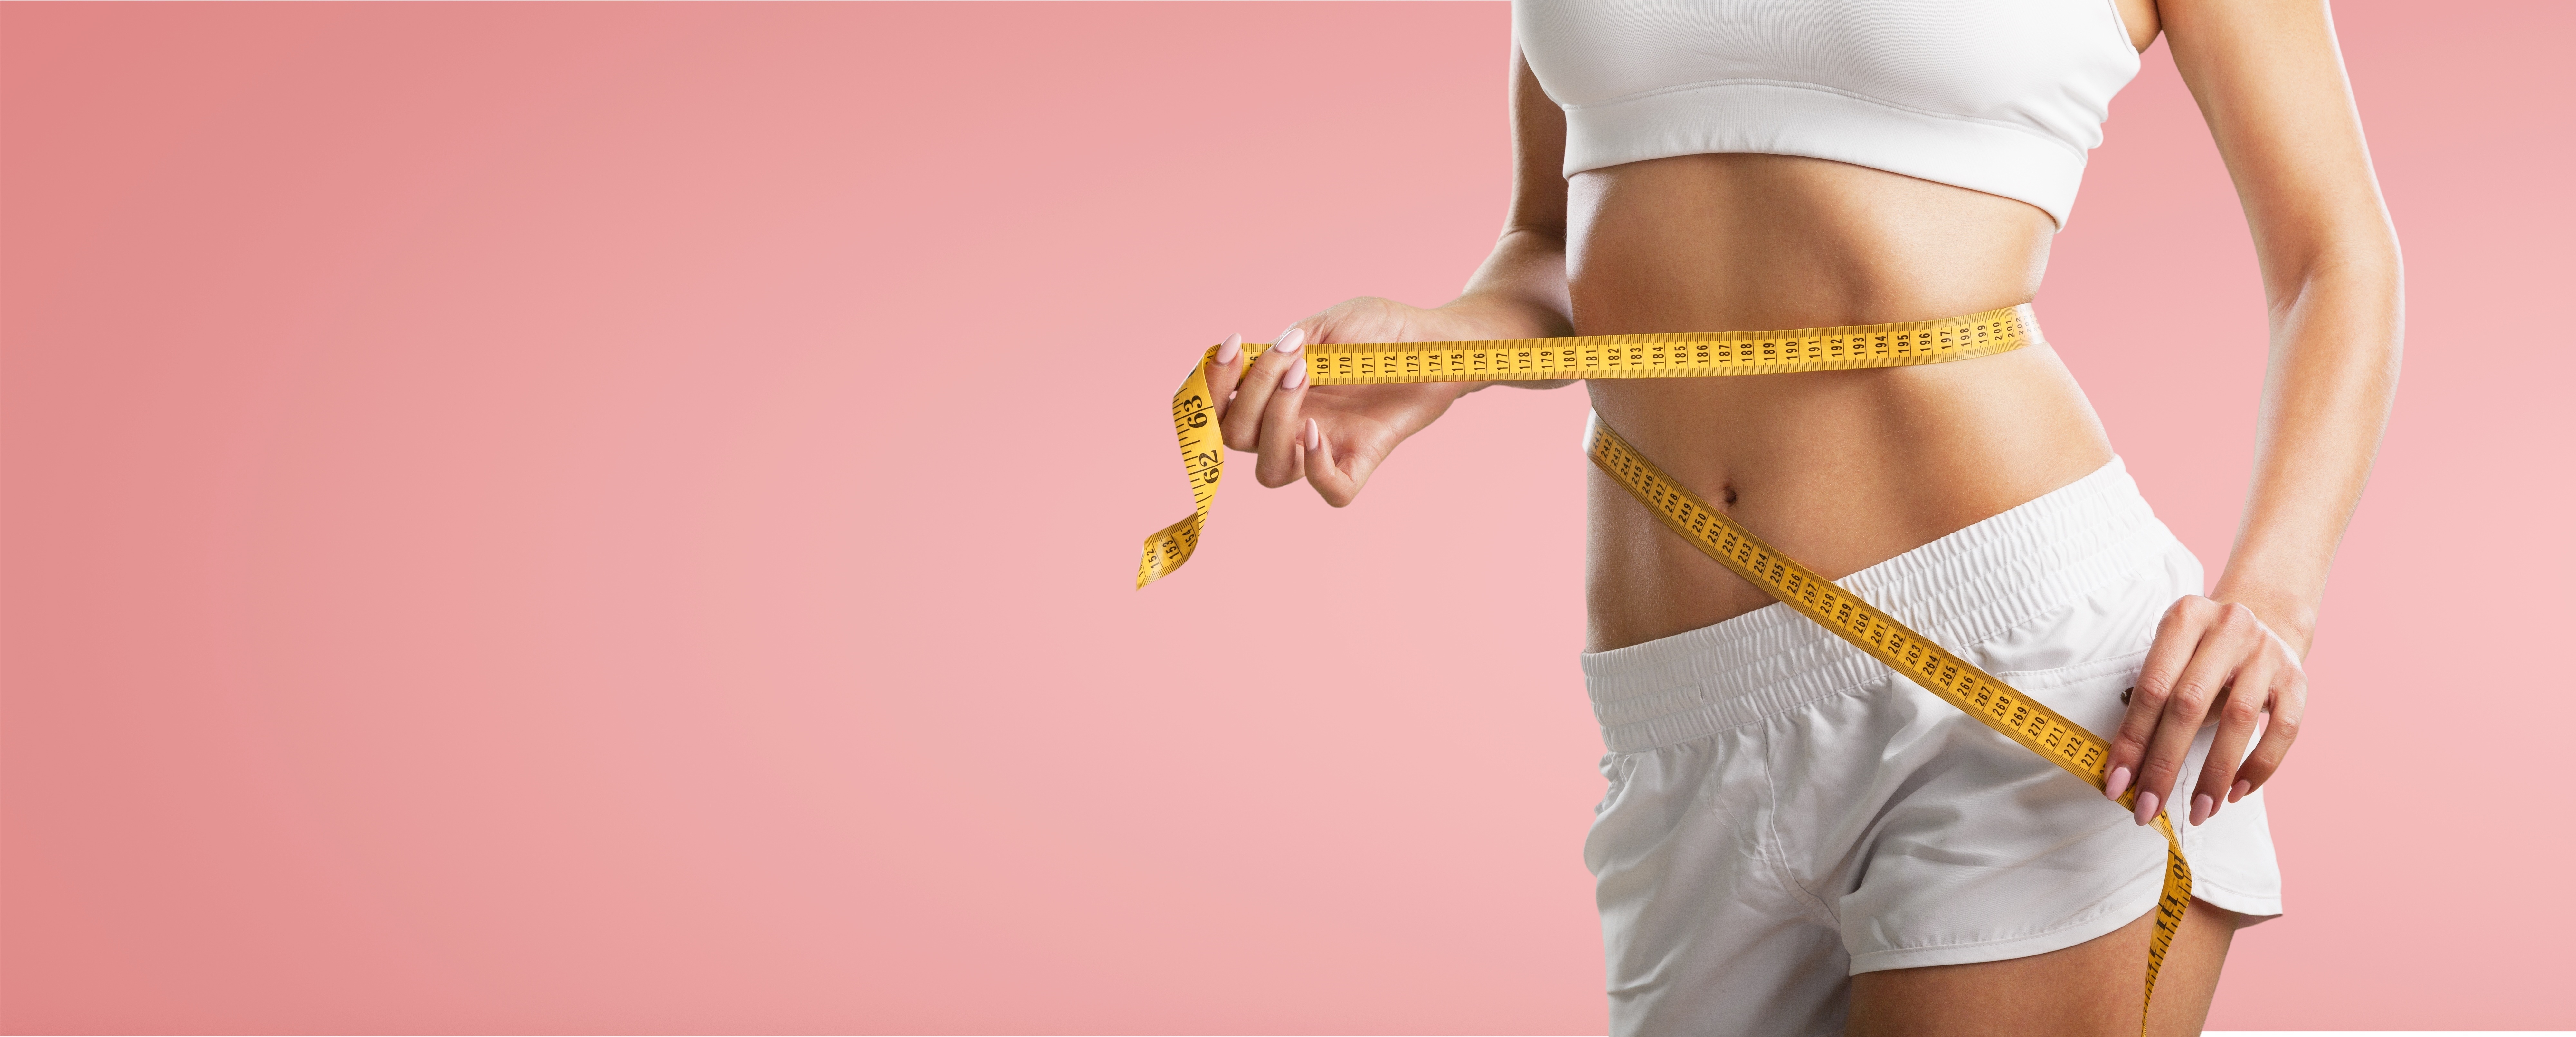 Perdre du poids accroît le risque de troubles du comportement alimentaire.&nbsp;©&nbsp;BillionPhotos.com, Adobe Stock